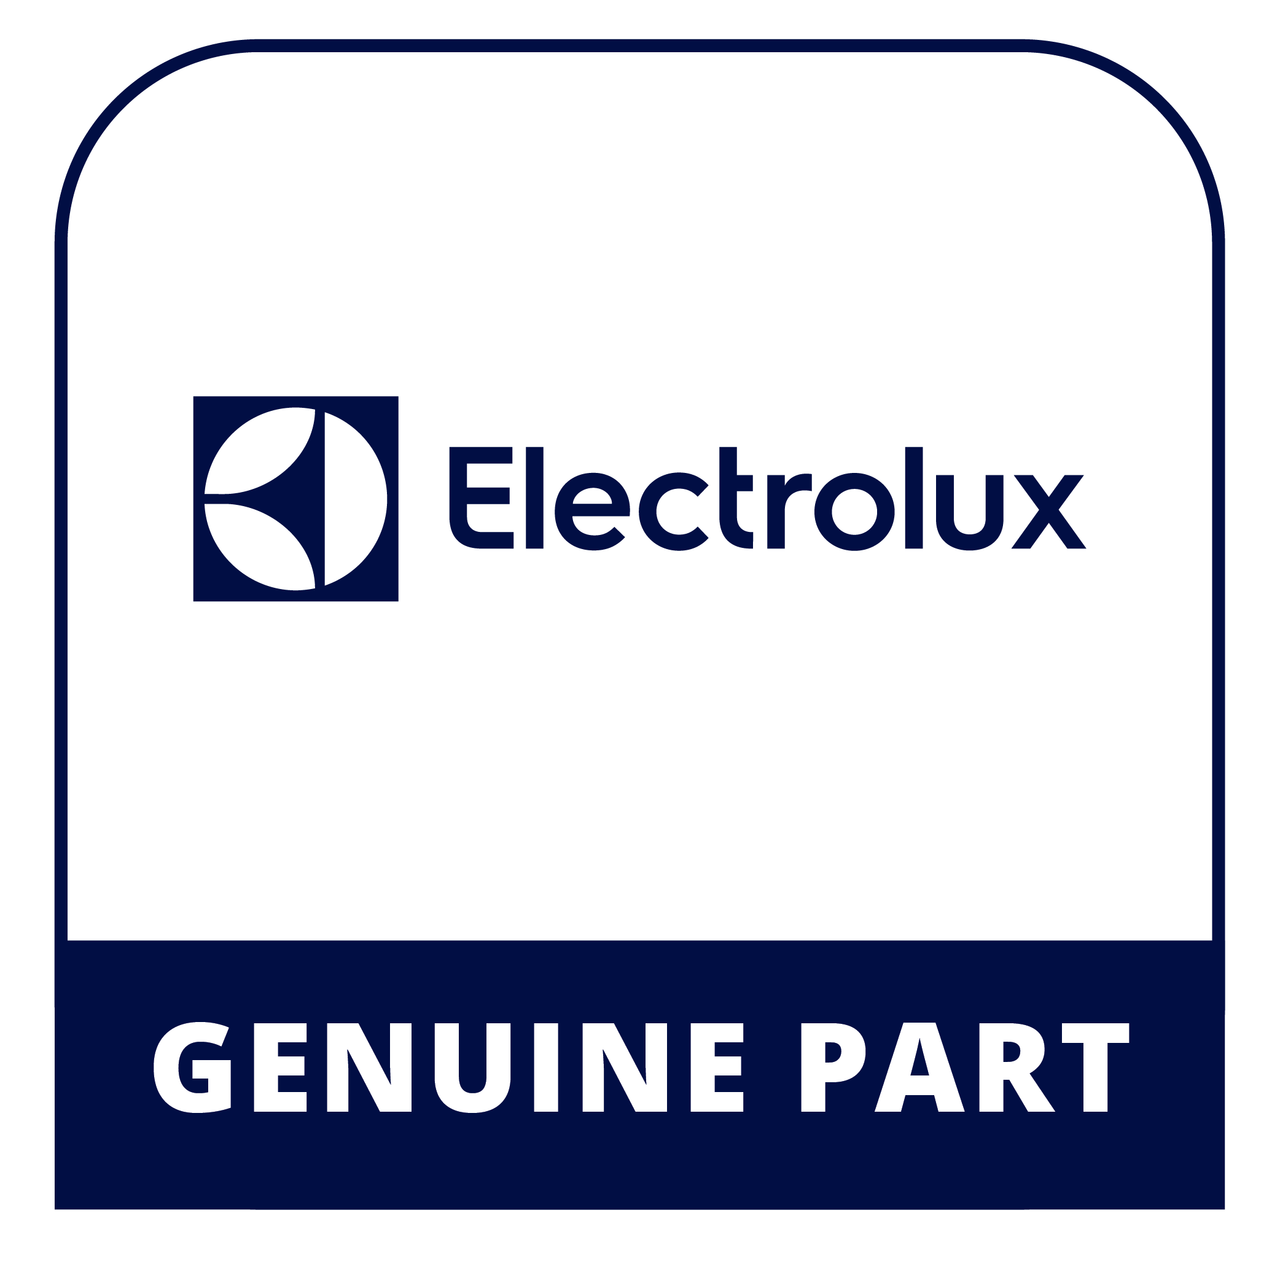 Frigidaire - Electrolux 5304502041 Switch - Genuine Electrolux Part